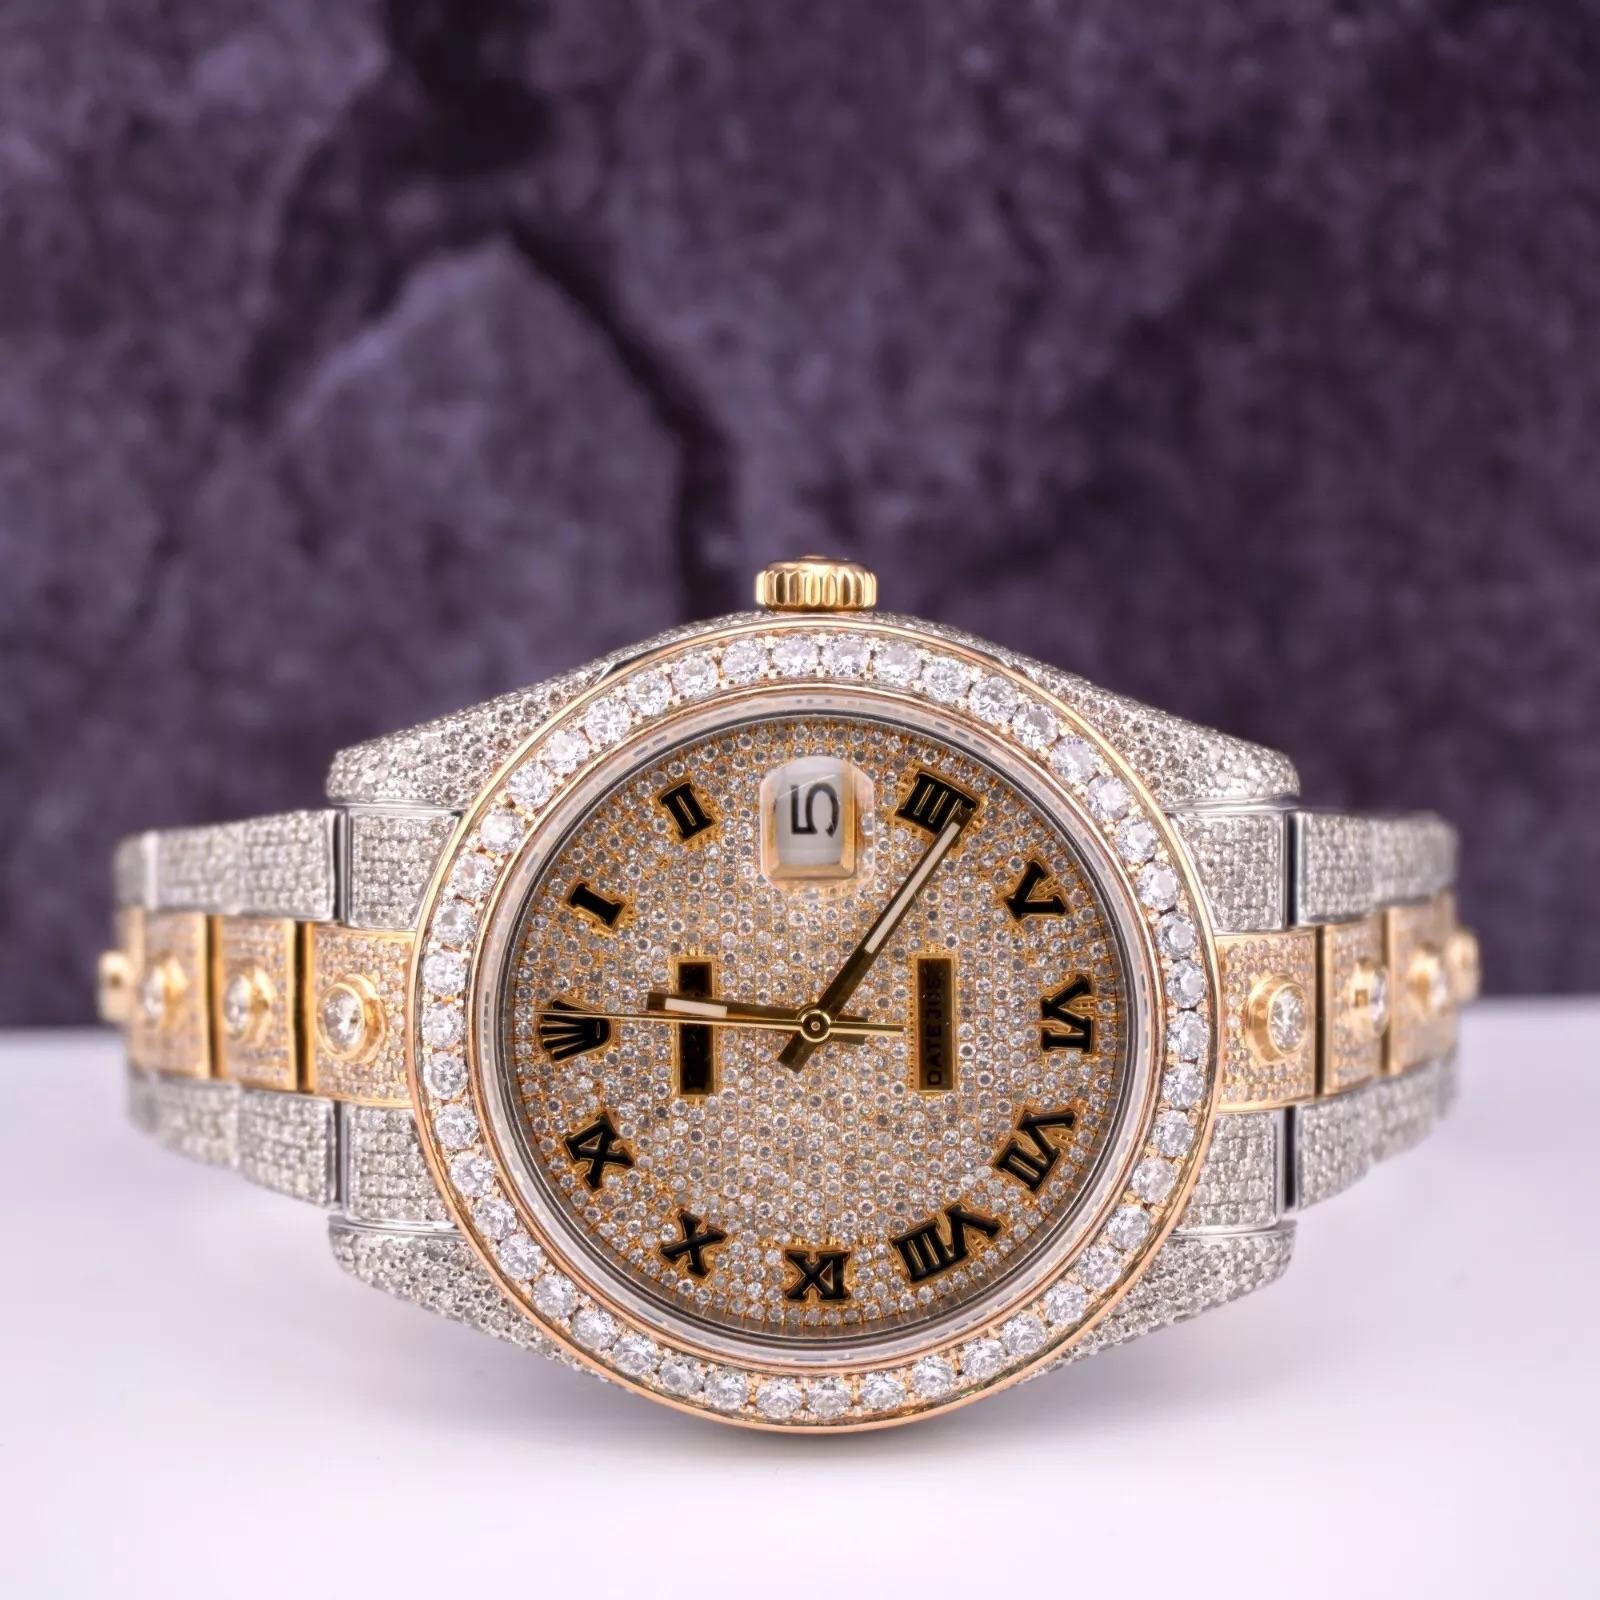 Montre Rolex Datejust 41mm personnalisée avec 22.00 carats de diamants véritables ! L'ensemble de la montre est d'origine, seuls la lunette et le cadran en diamants ont été ajoutés. L'ensemble de la lunette, du cadran, du boîtier et du bracelet a